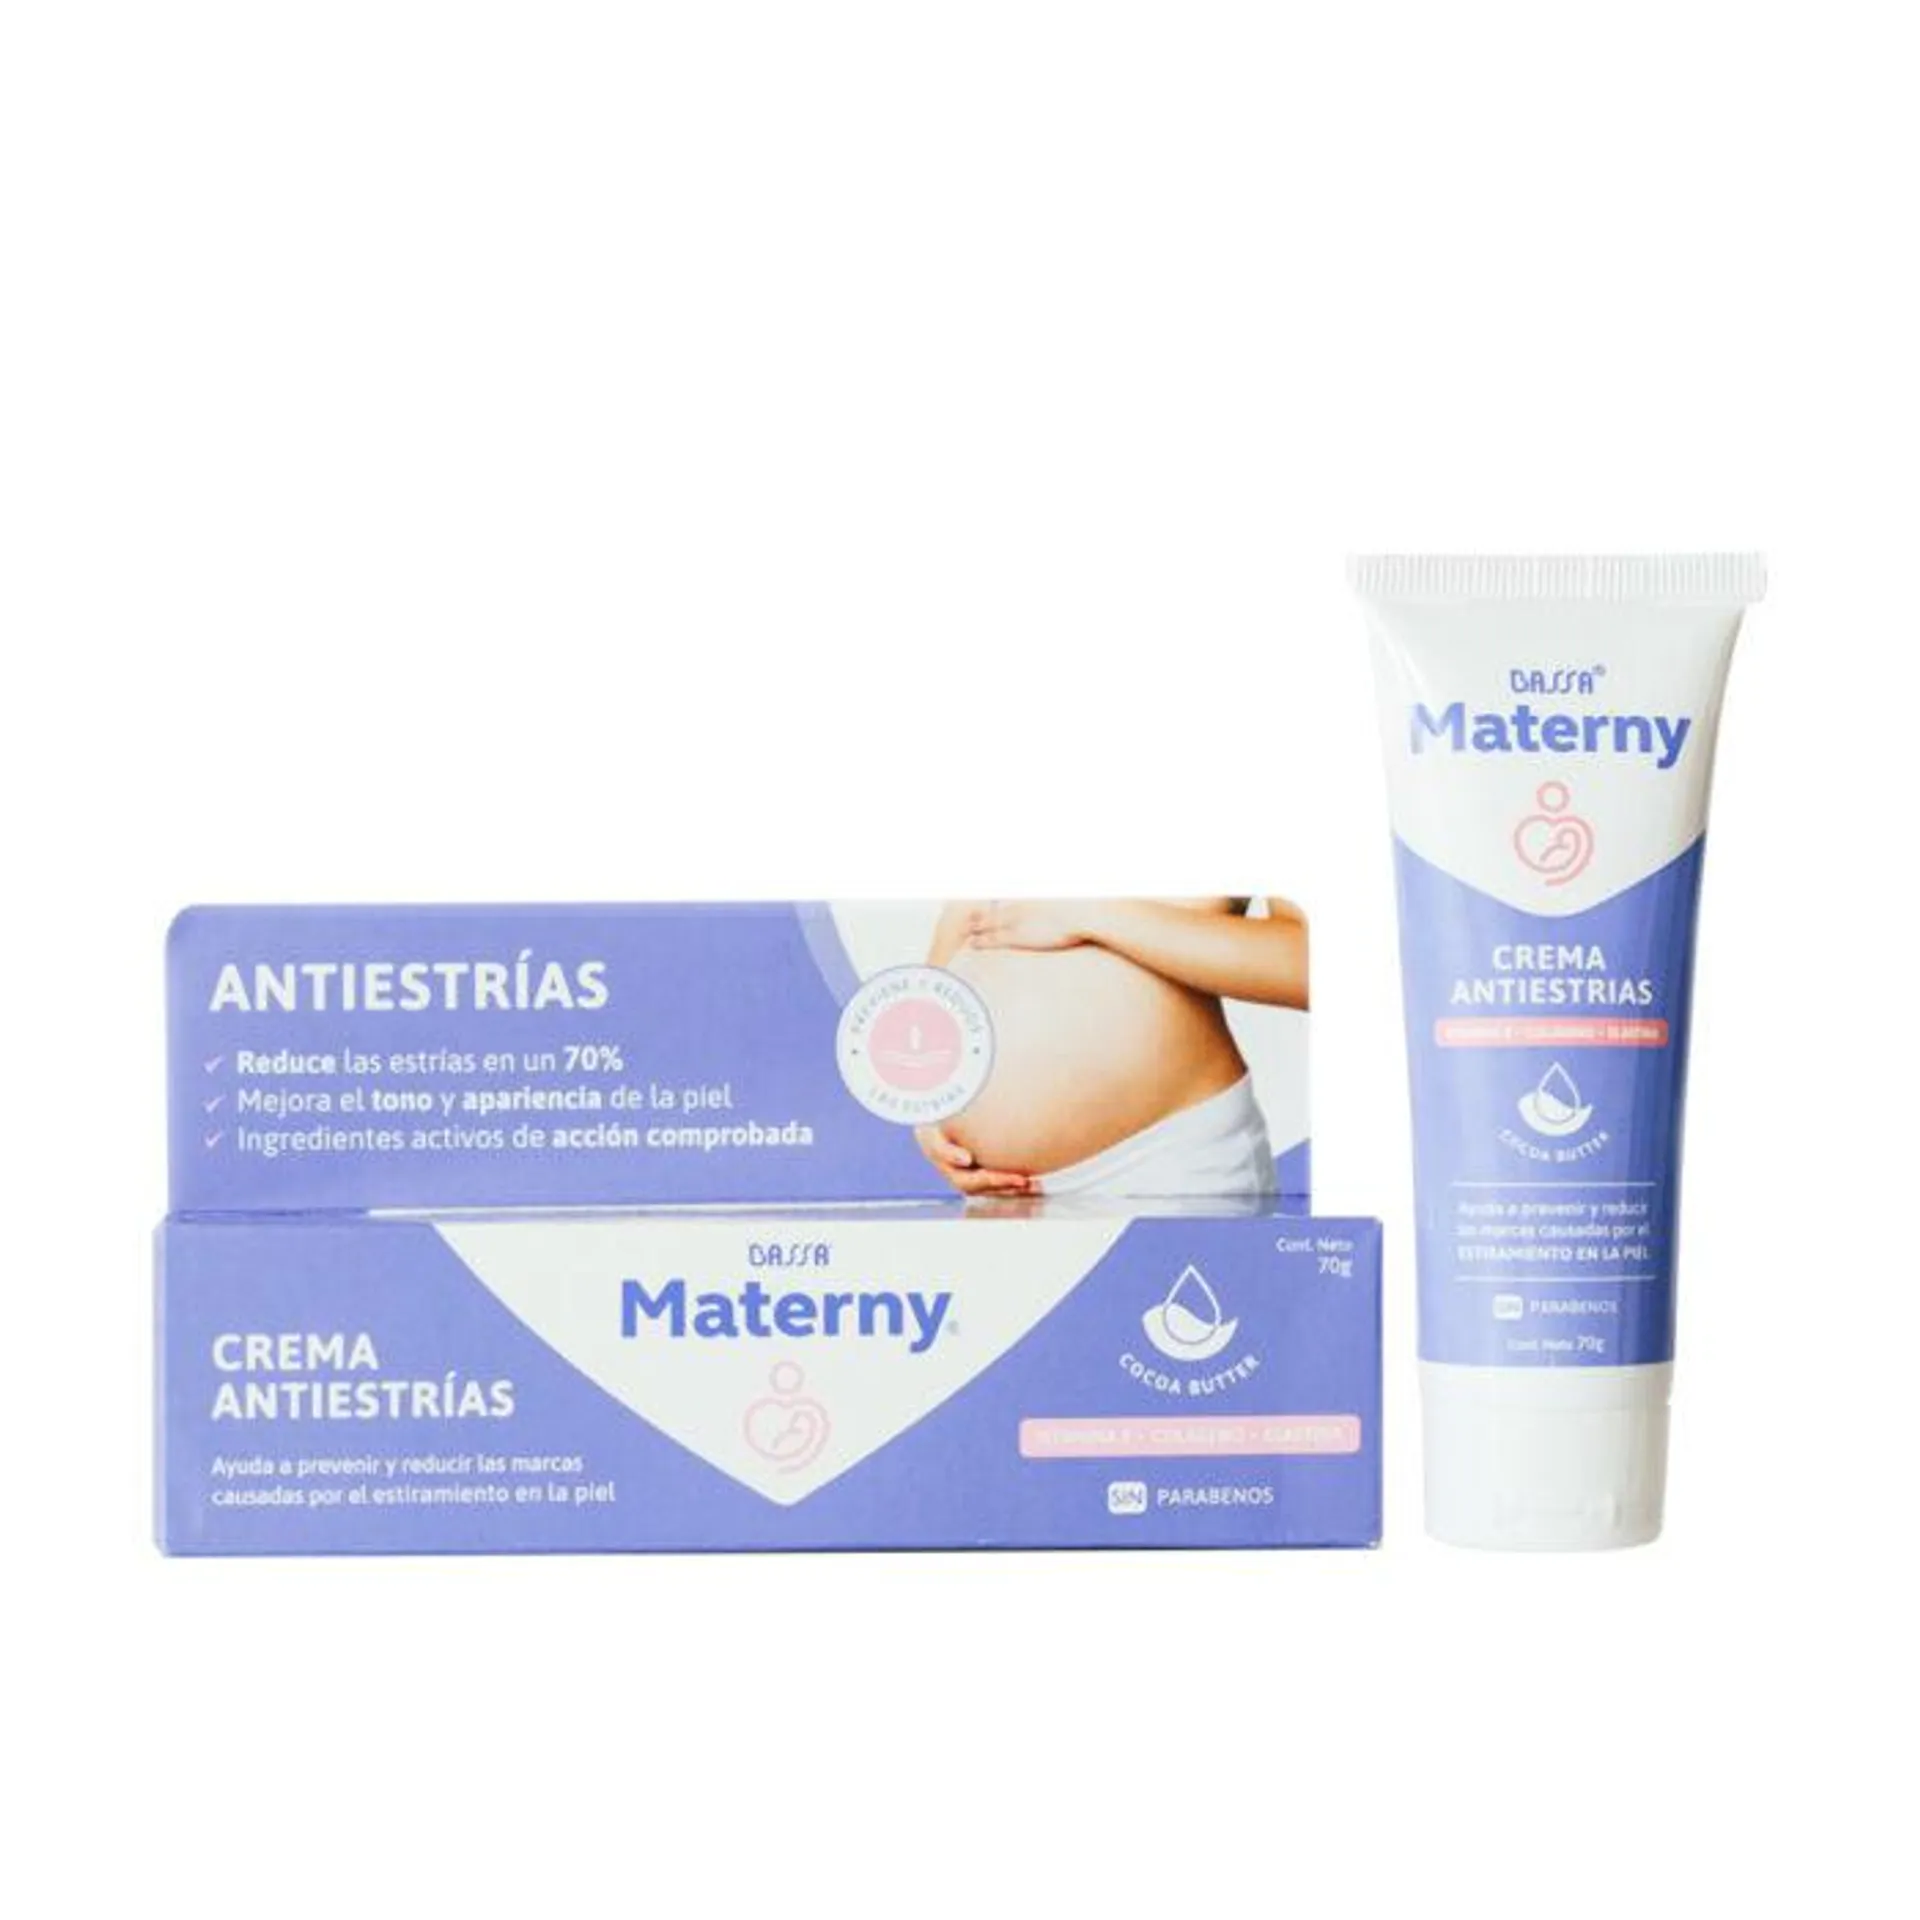 Materny Crema Antiestrías